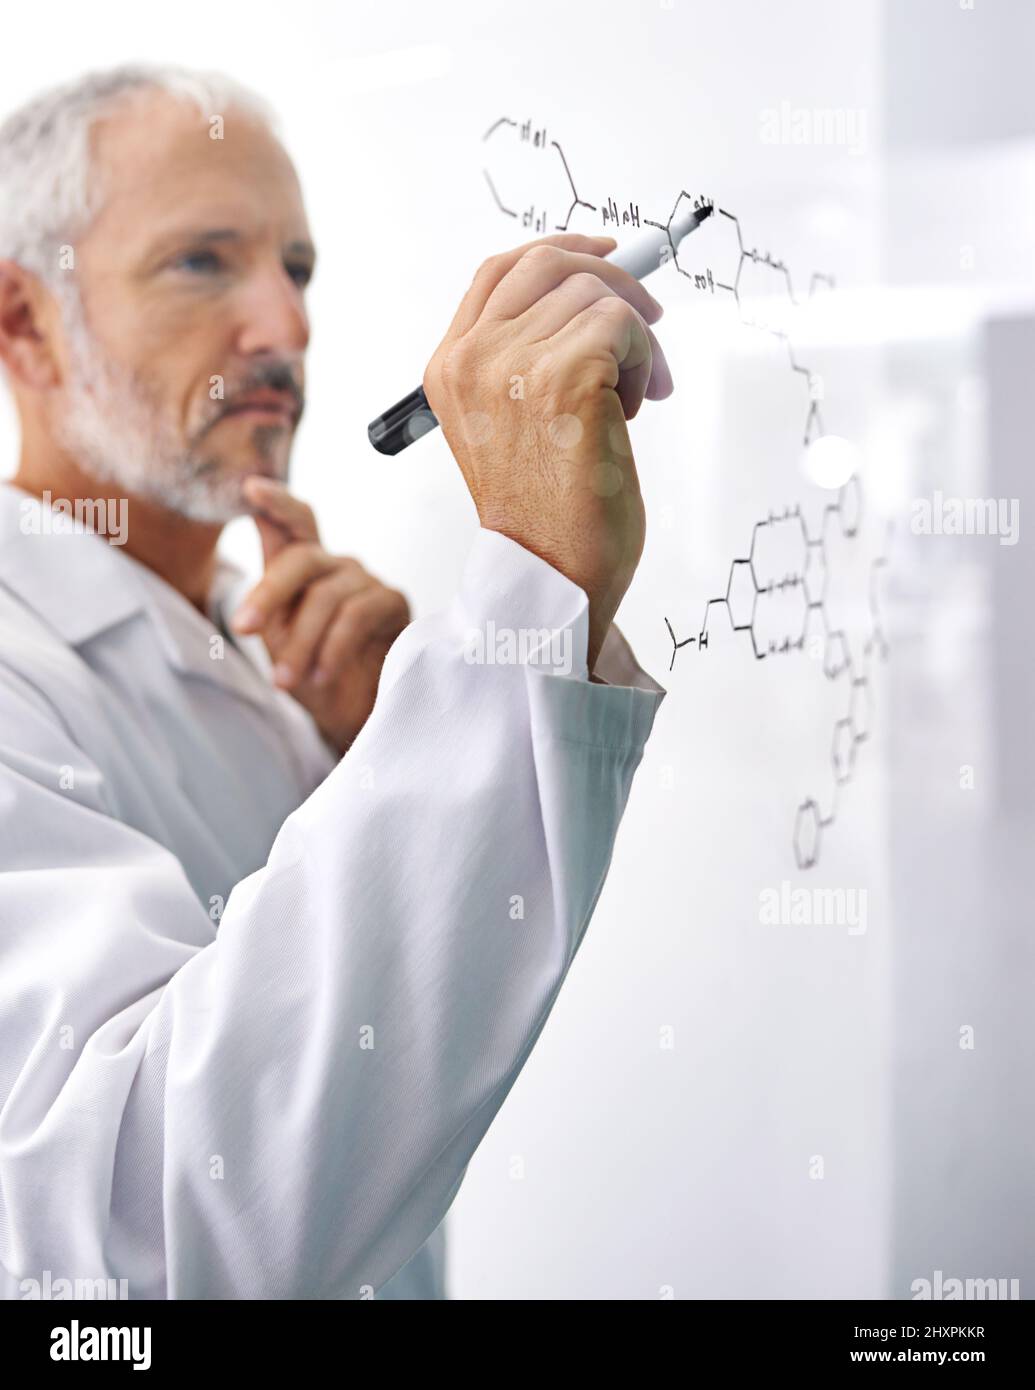 HES ha partecipato a ricerche all'avanguardia. Shot di uno scienziato maschio maturo che disegna una struttura molecolare su una superficie di vetro. Foto Stock